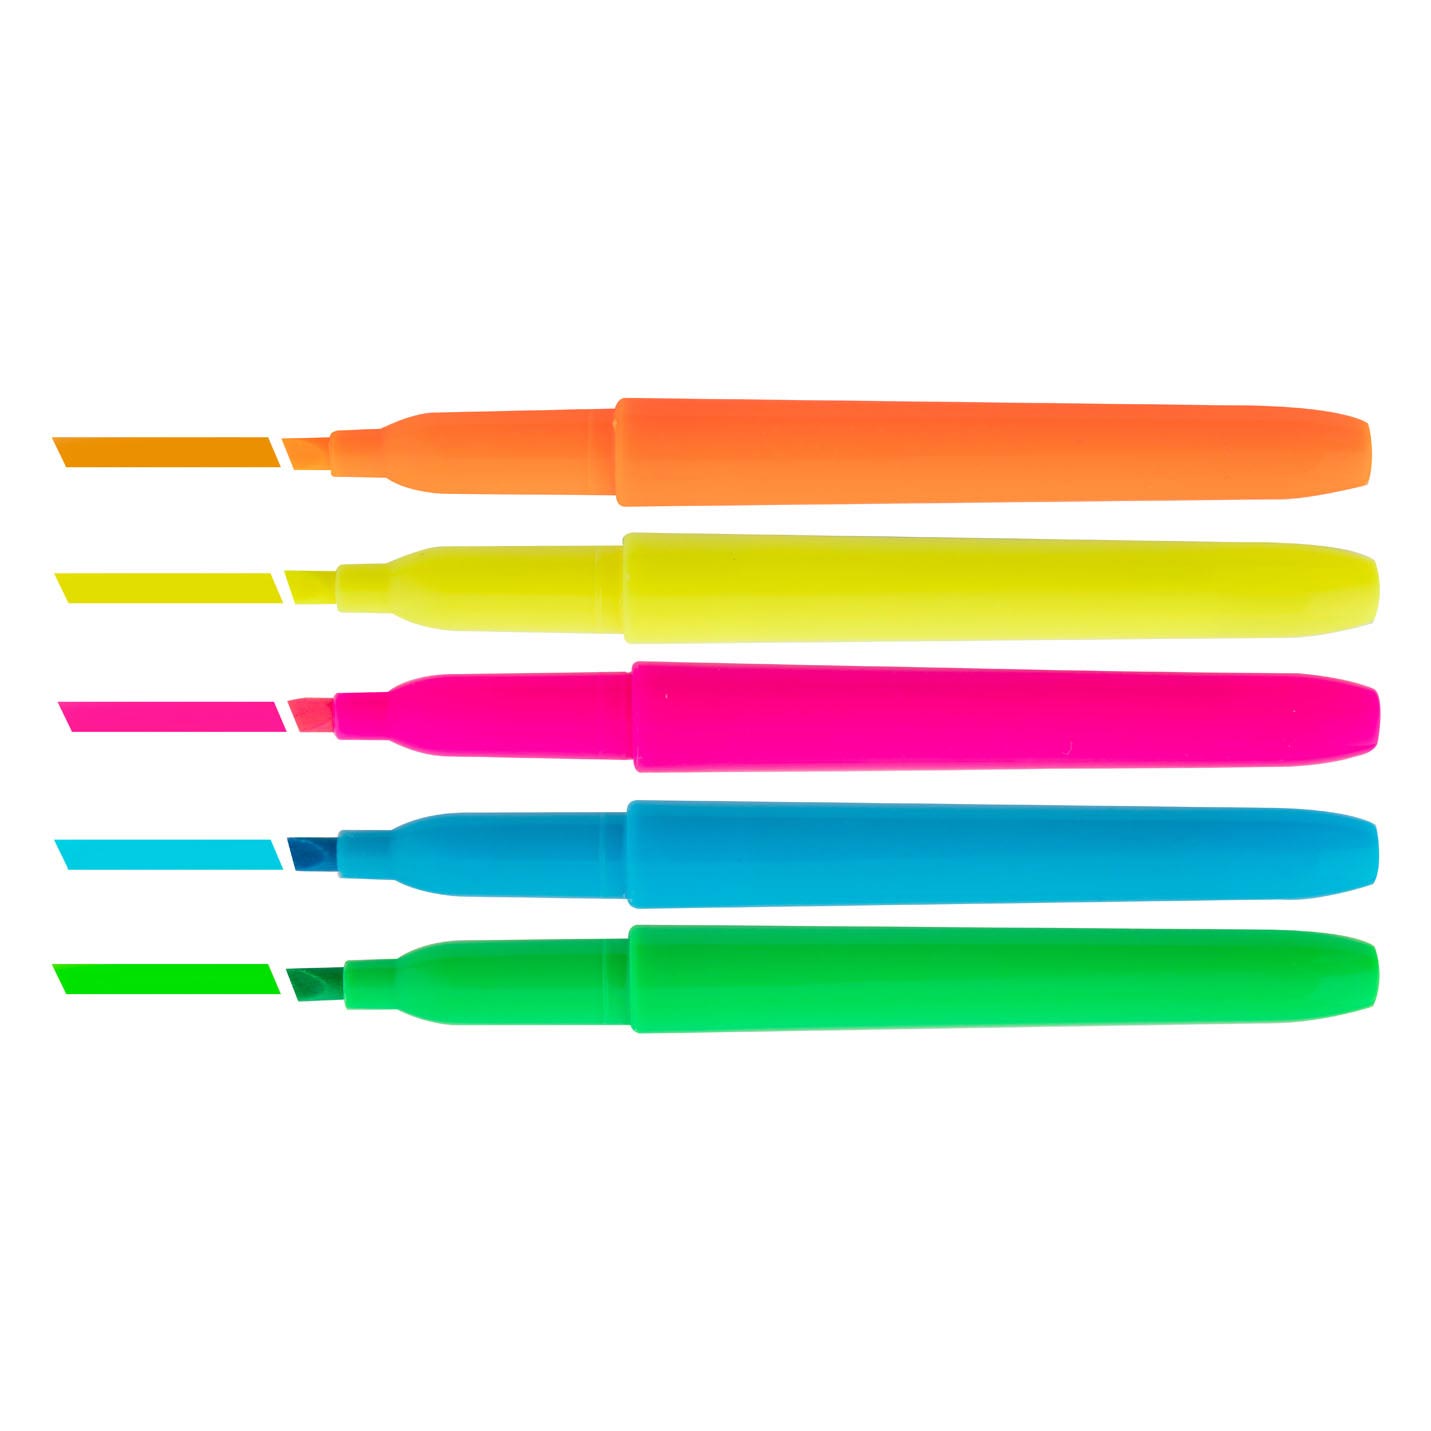 Kleurboek Neon met 5 Stiften - Raket